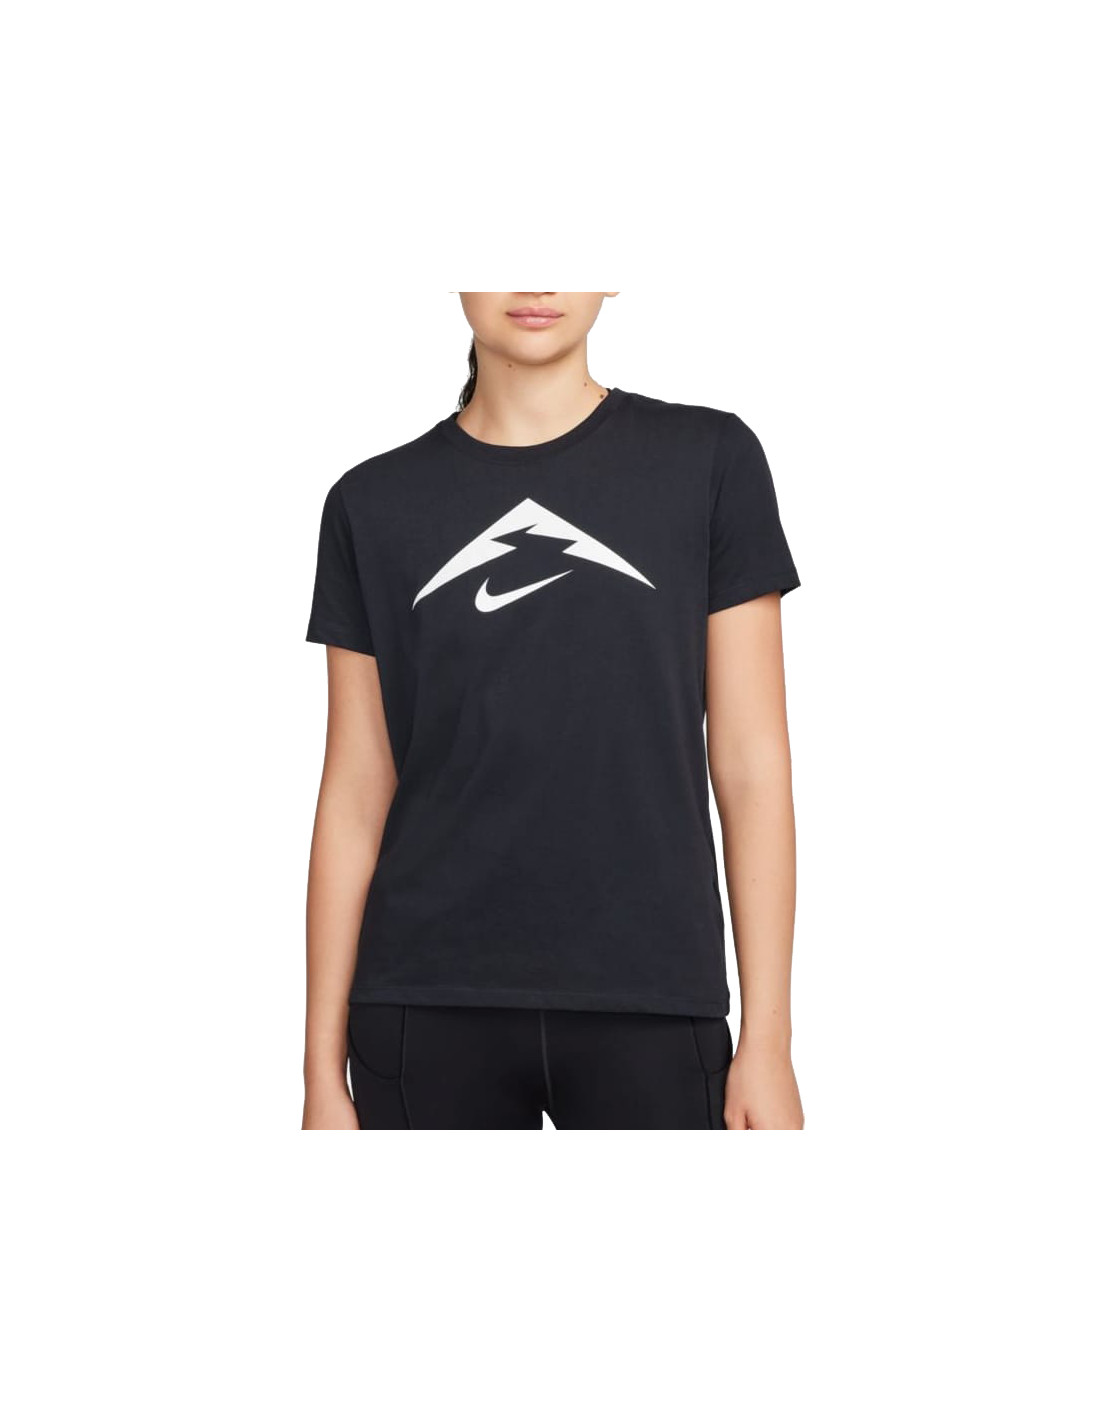 Nike Trail Women's T-Shirt